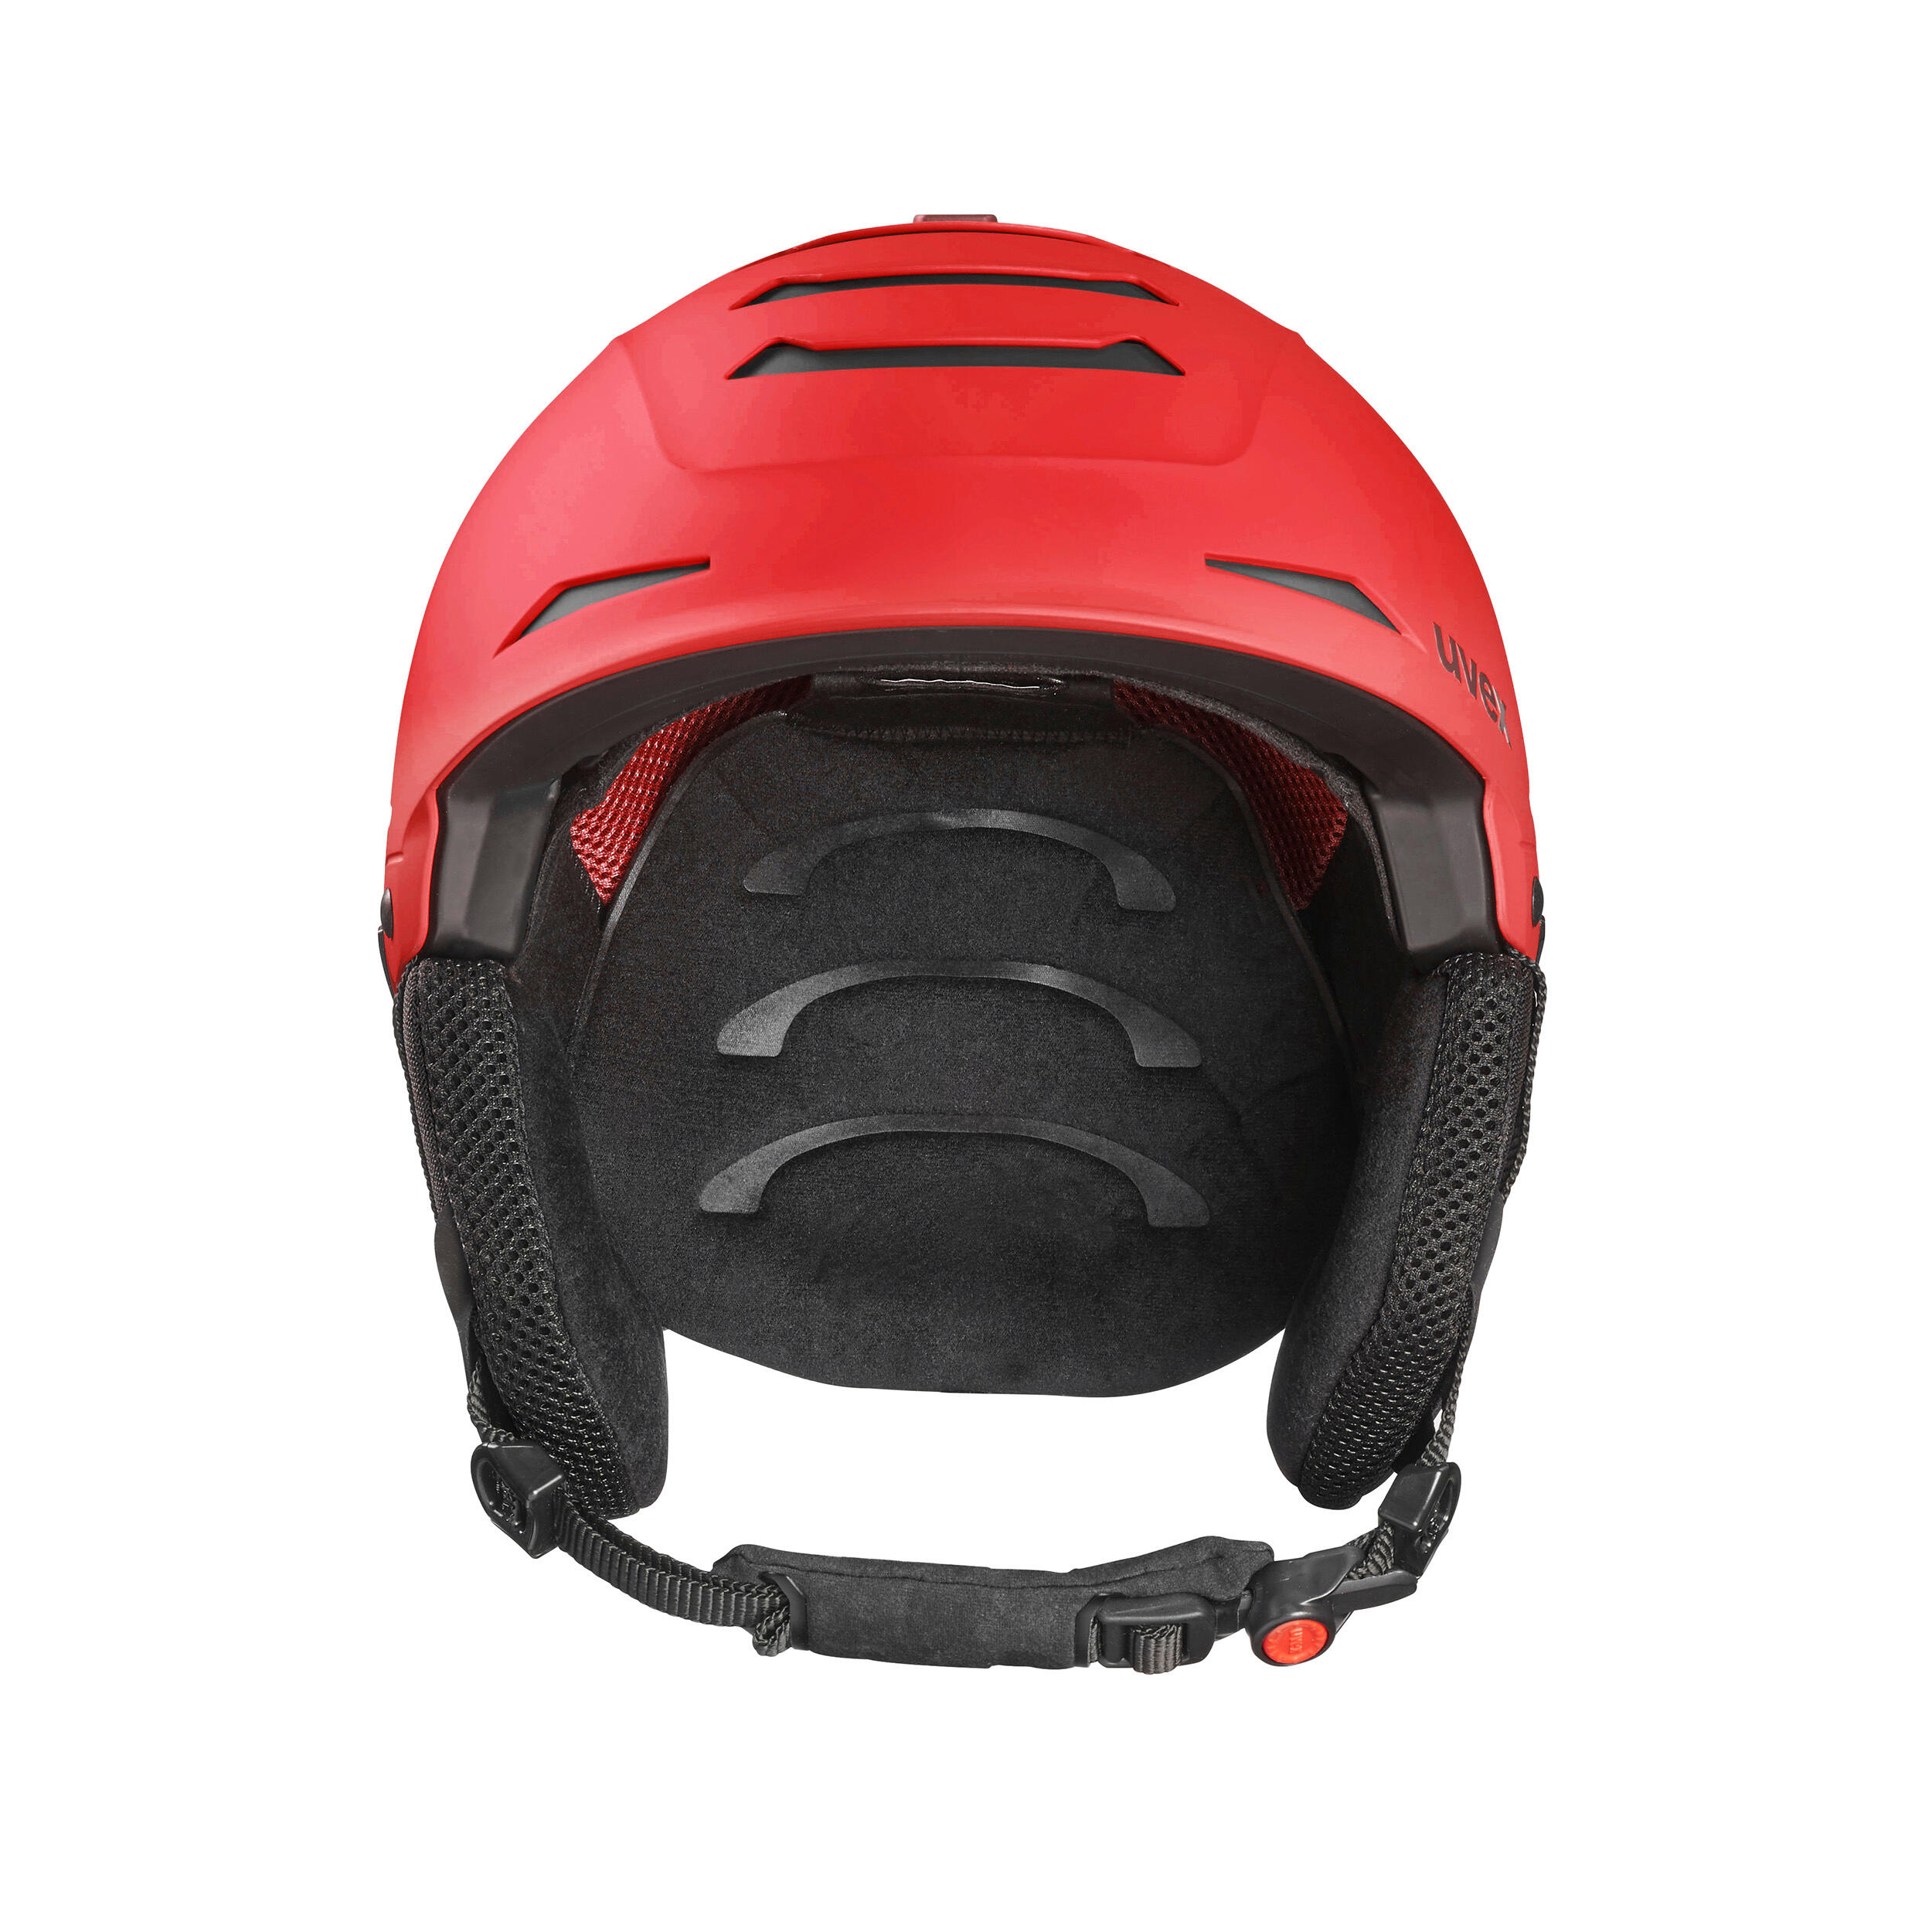 Helmet Legend Red 2/9